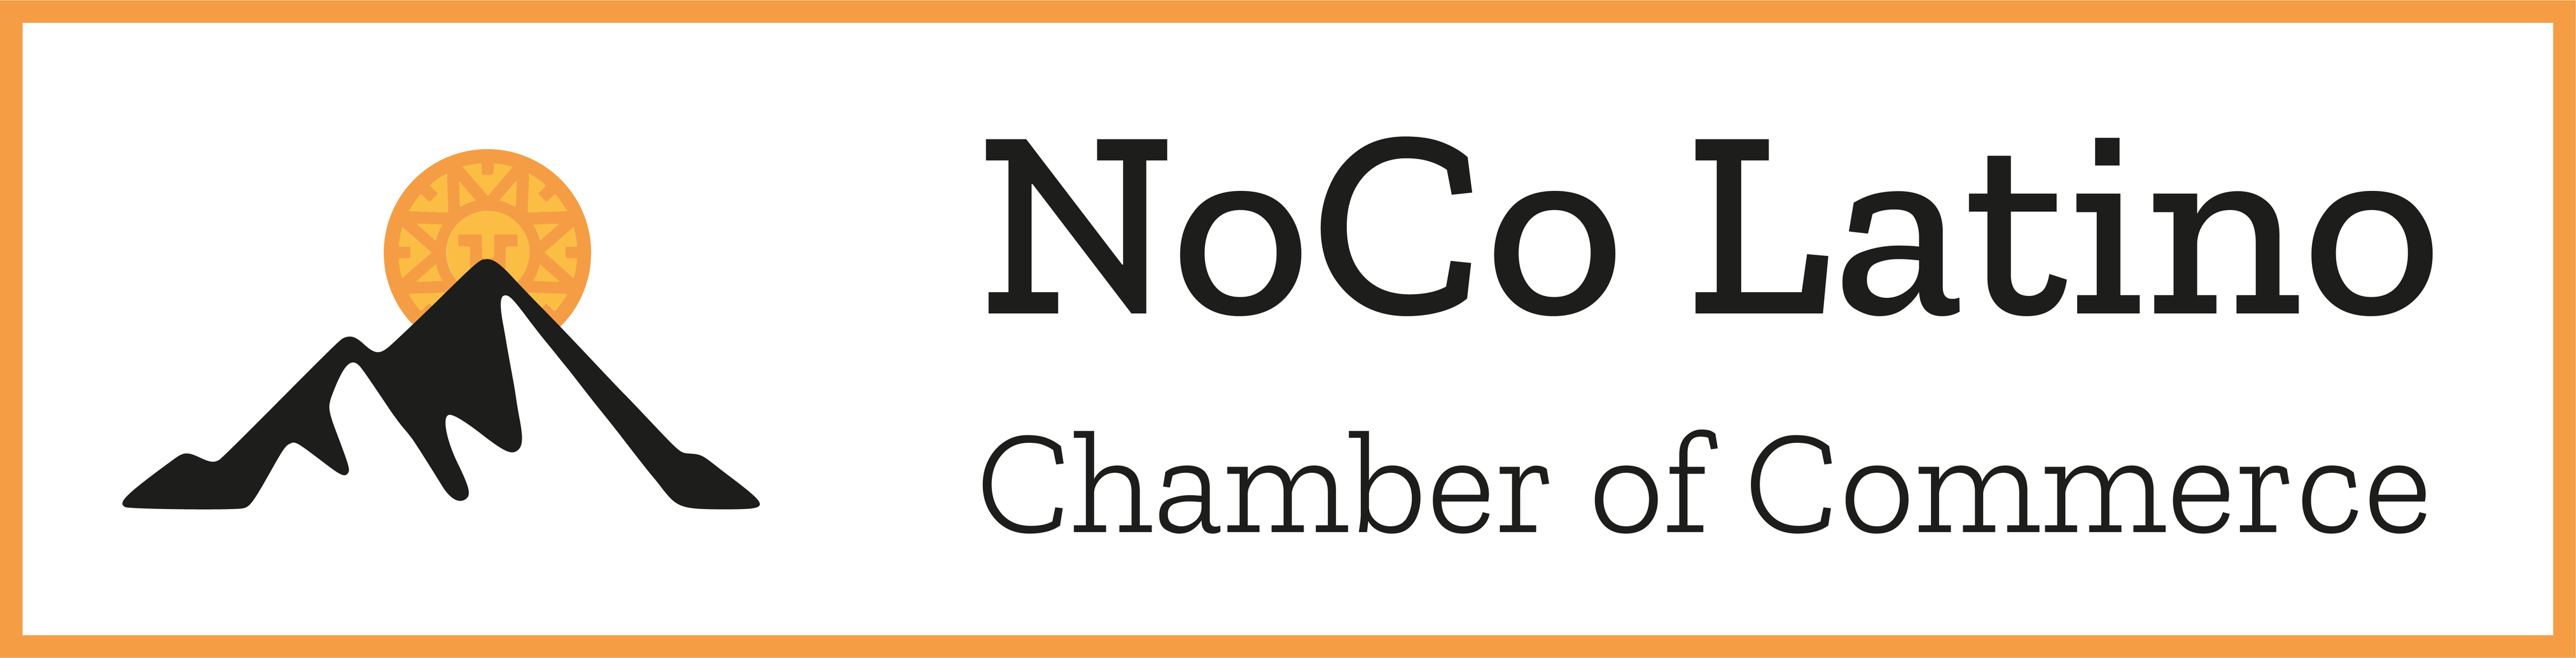 NoCo Latino Chamber